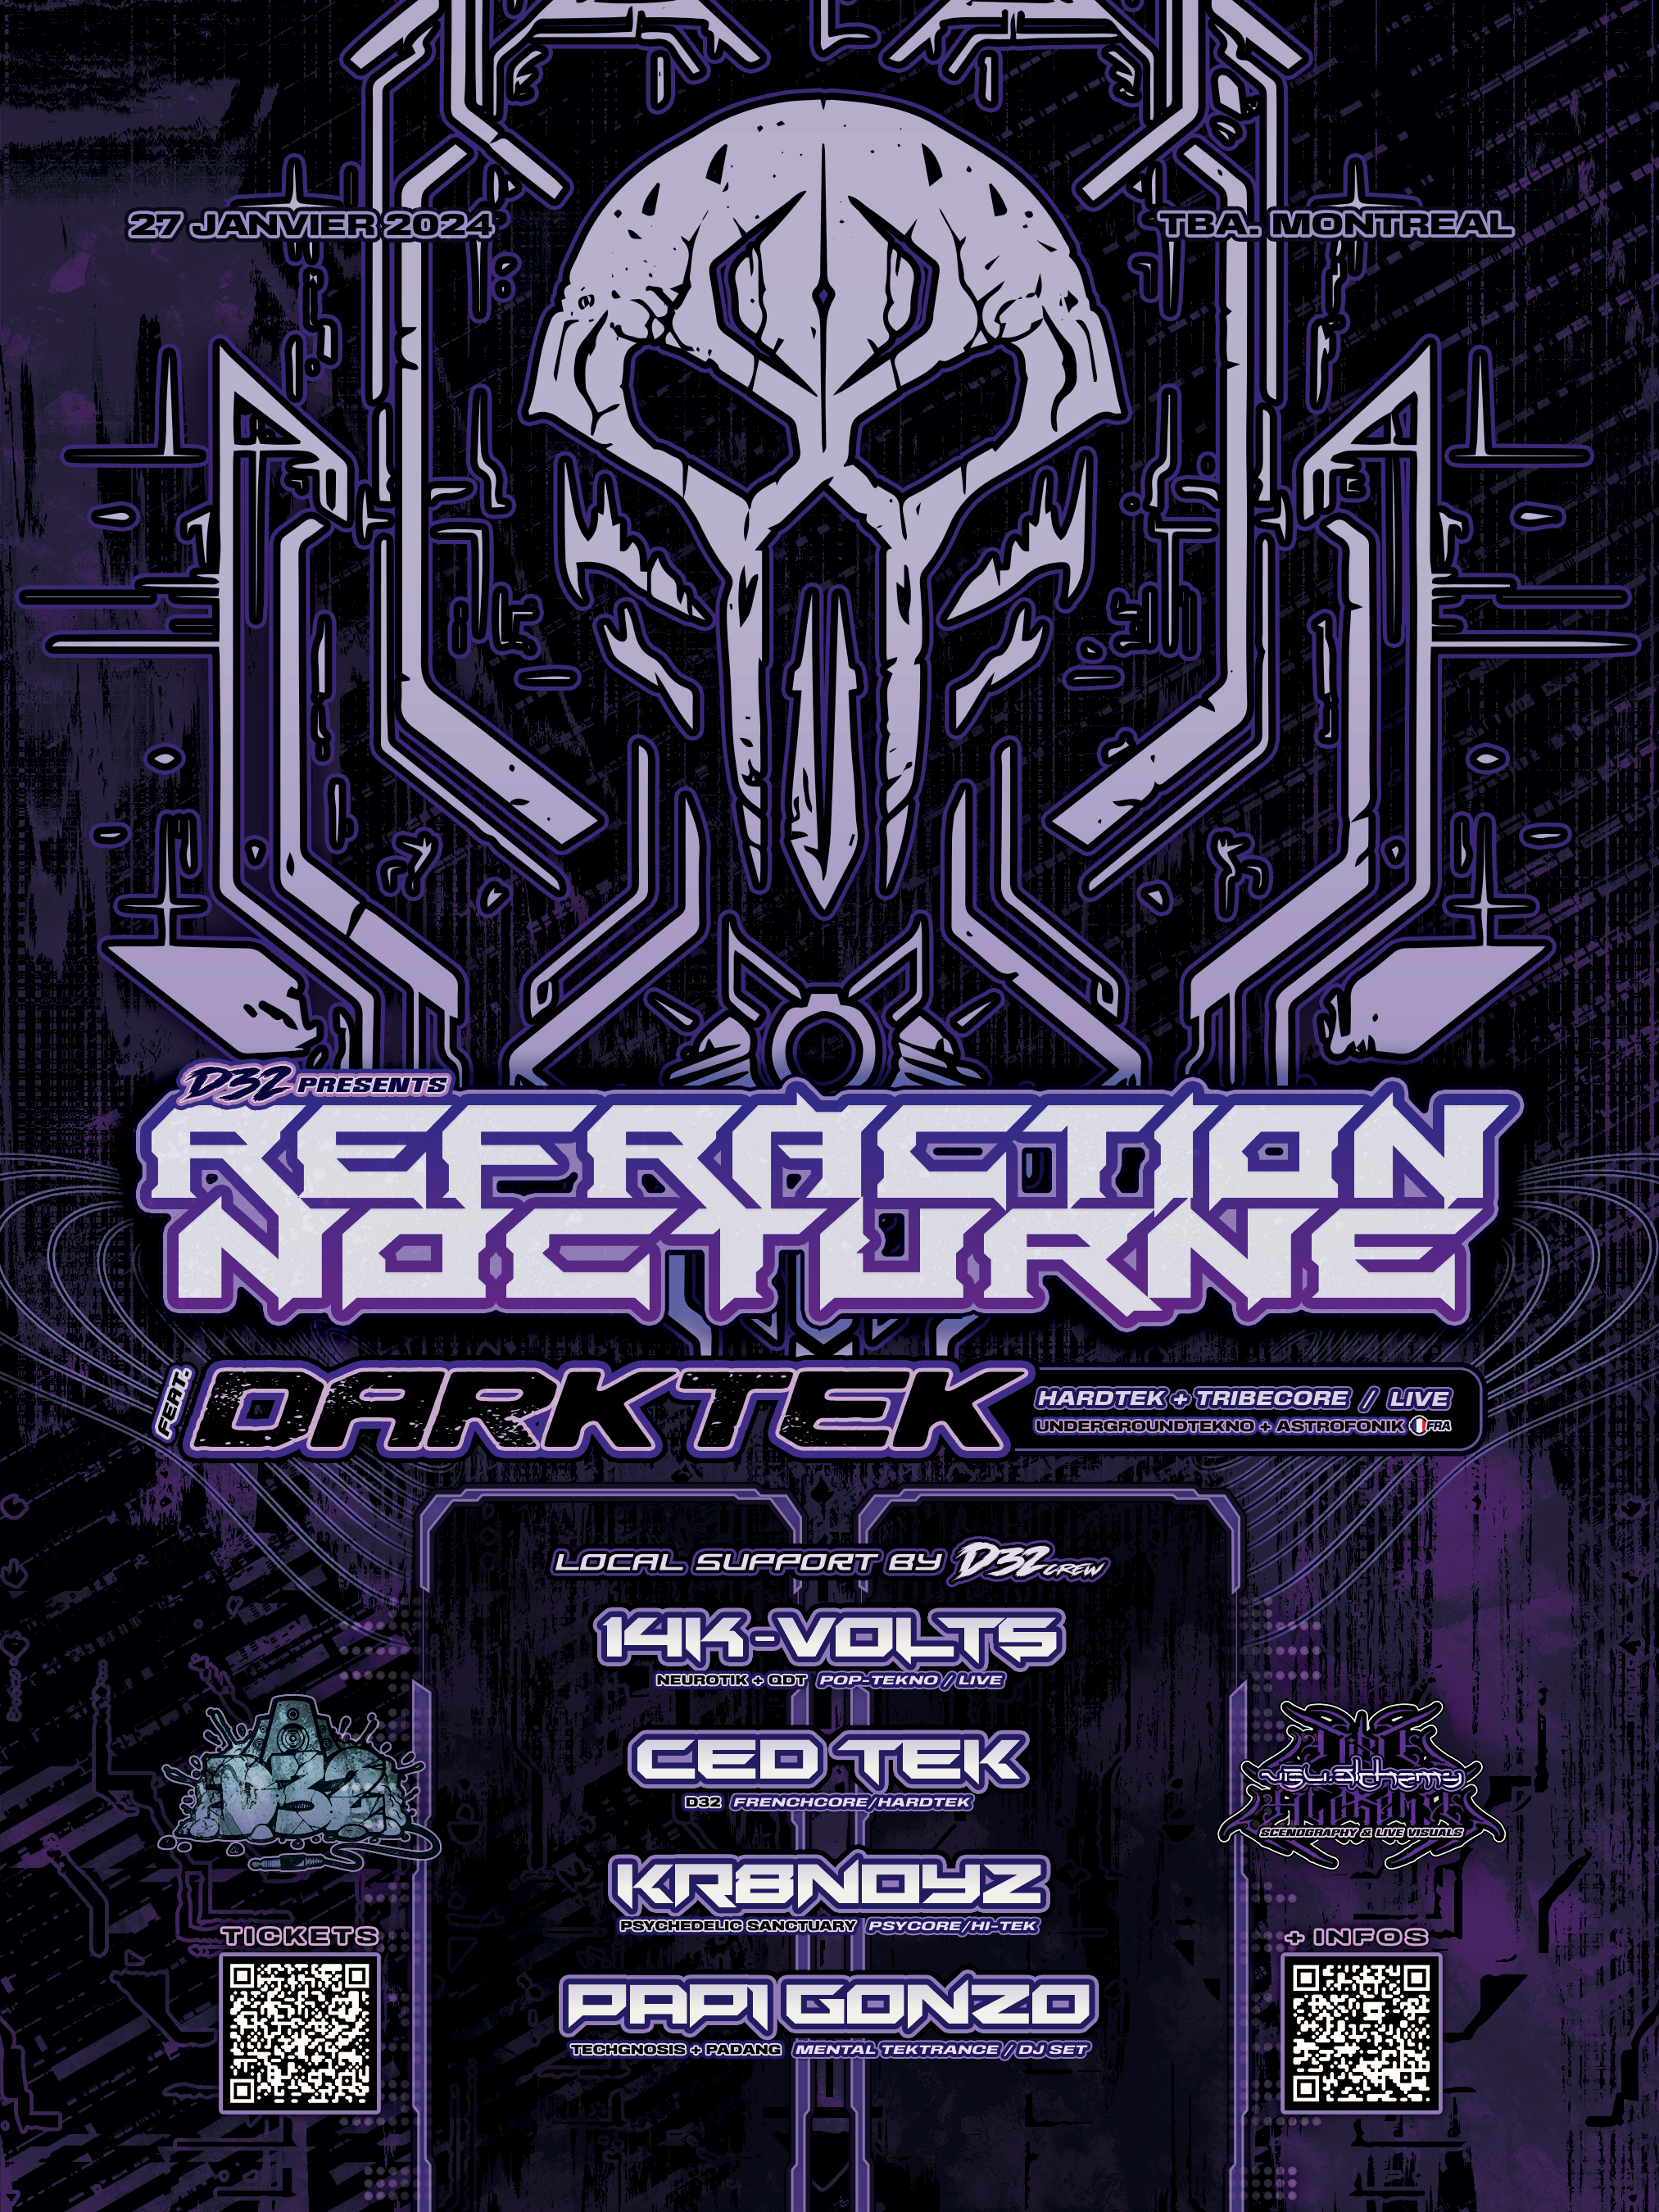 Réfraction Nocturne feat. Darktek [FR] - フライヤー表